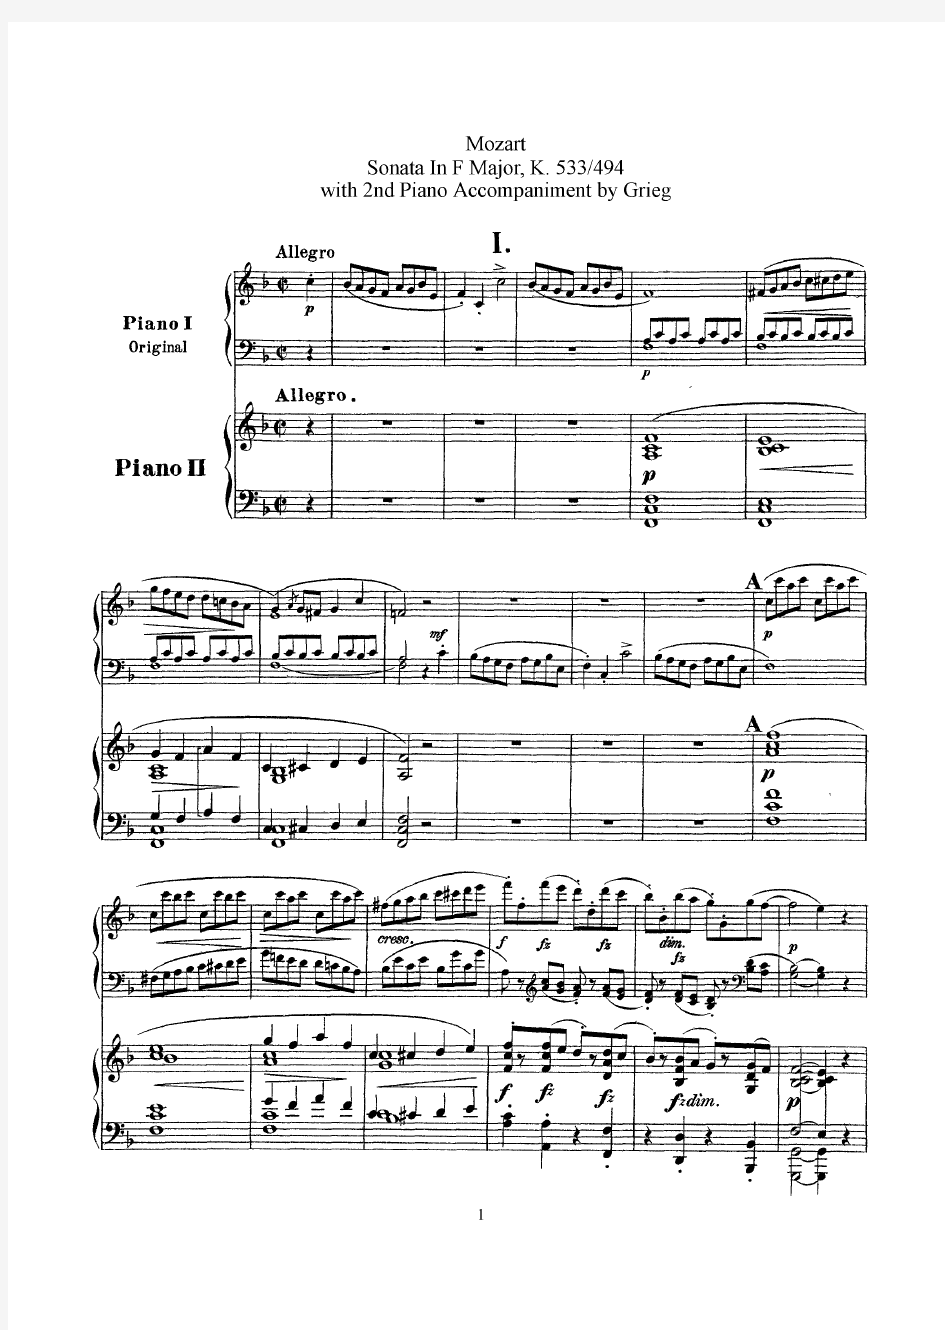 (格里格 双钢琴)Sonata in F, K 533 (Mozart) 原版 五线谱 钢琴谱 正谱